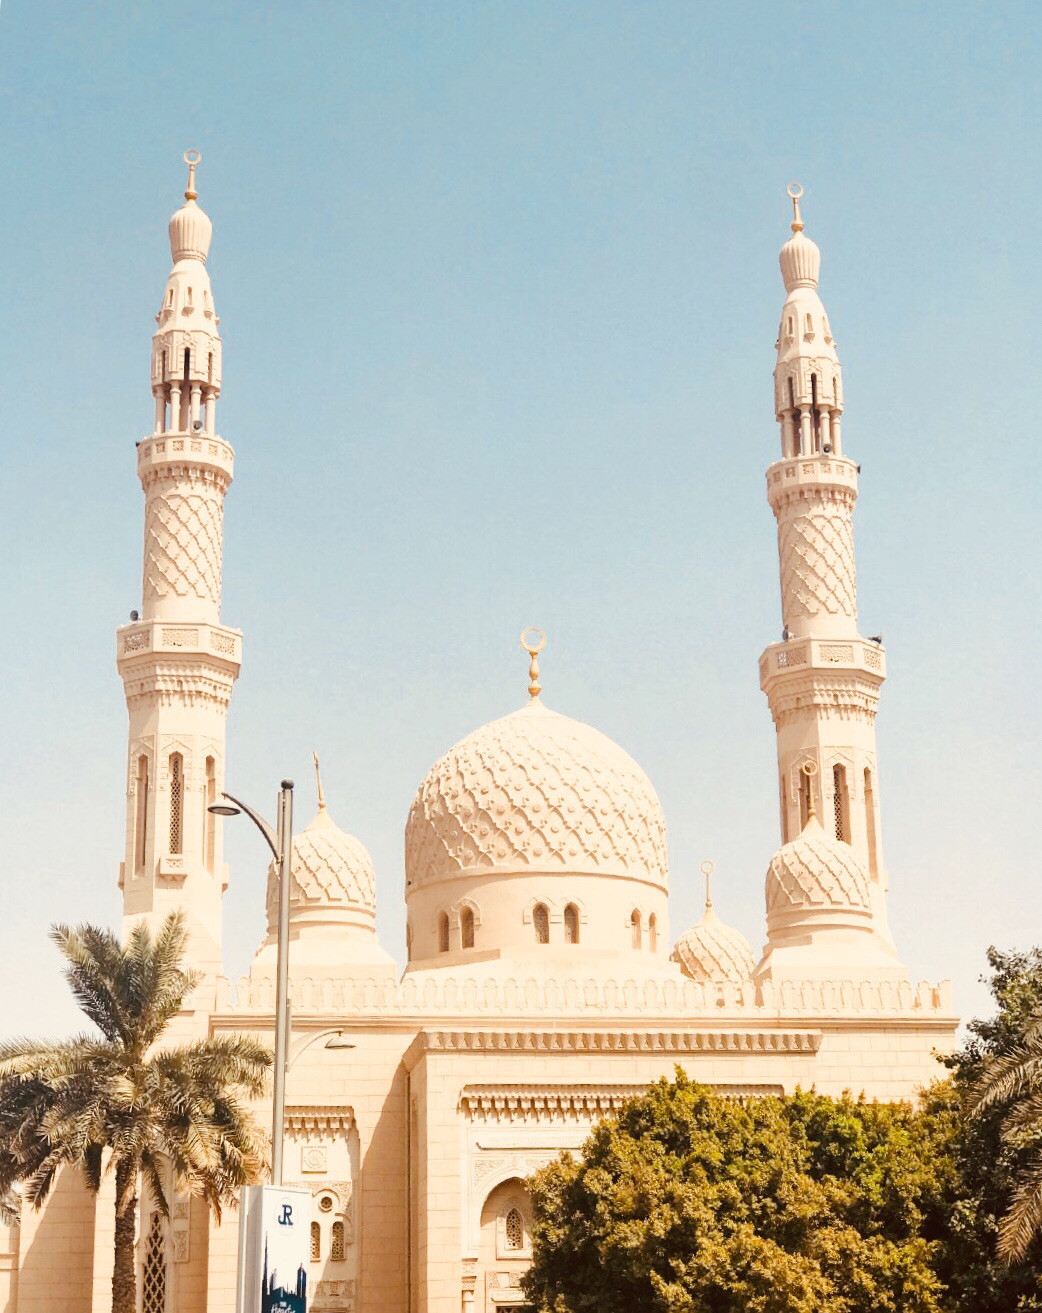 【携程攻略】阿布扎比谢赫扎耶德大清真寺景点,谢赫扎耶德清真寺是阿联酋最大的清真寺，世界第八大清寺。整个建筑群…